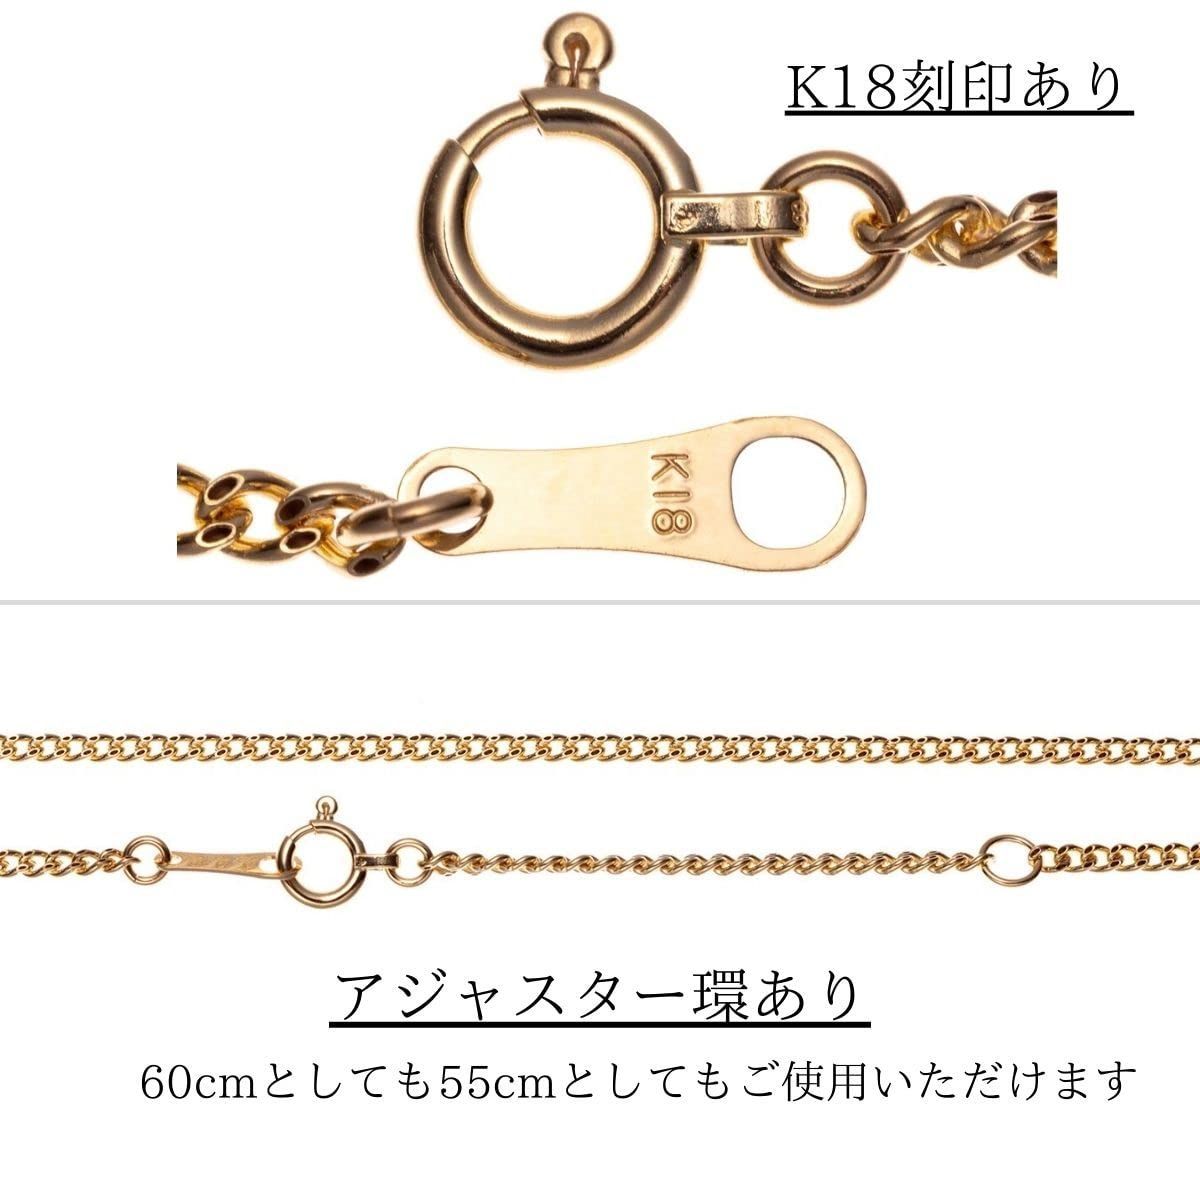 高品質18金WG使用 K18 正規品』喜平ネックレス60cm 1,65mm ネックレス